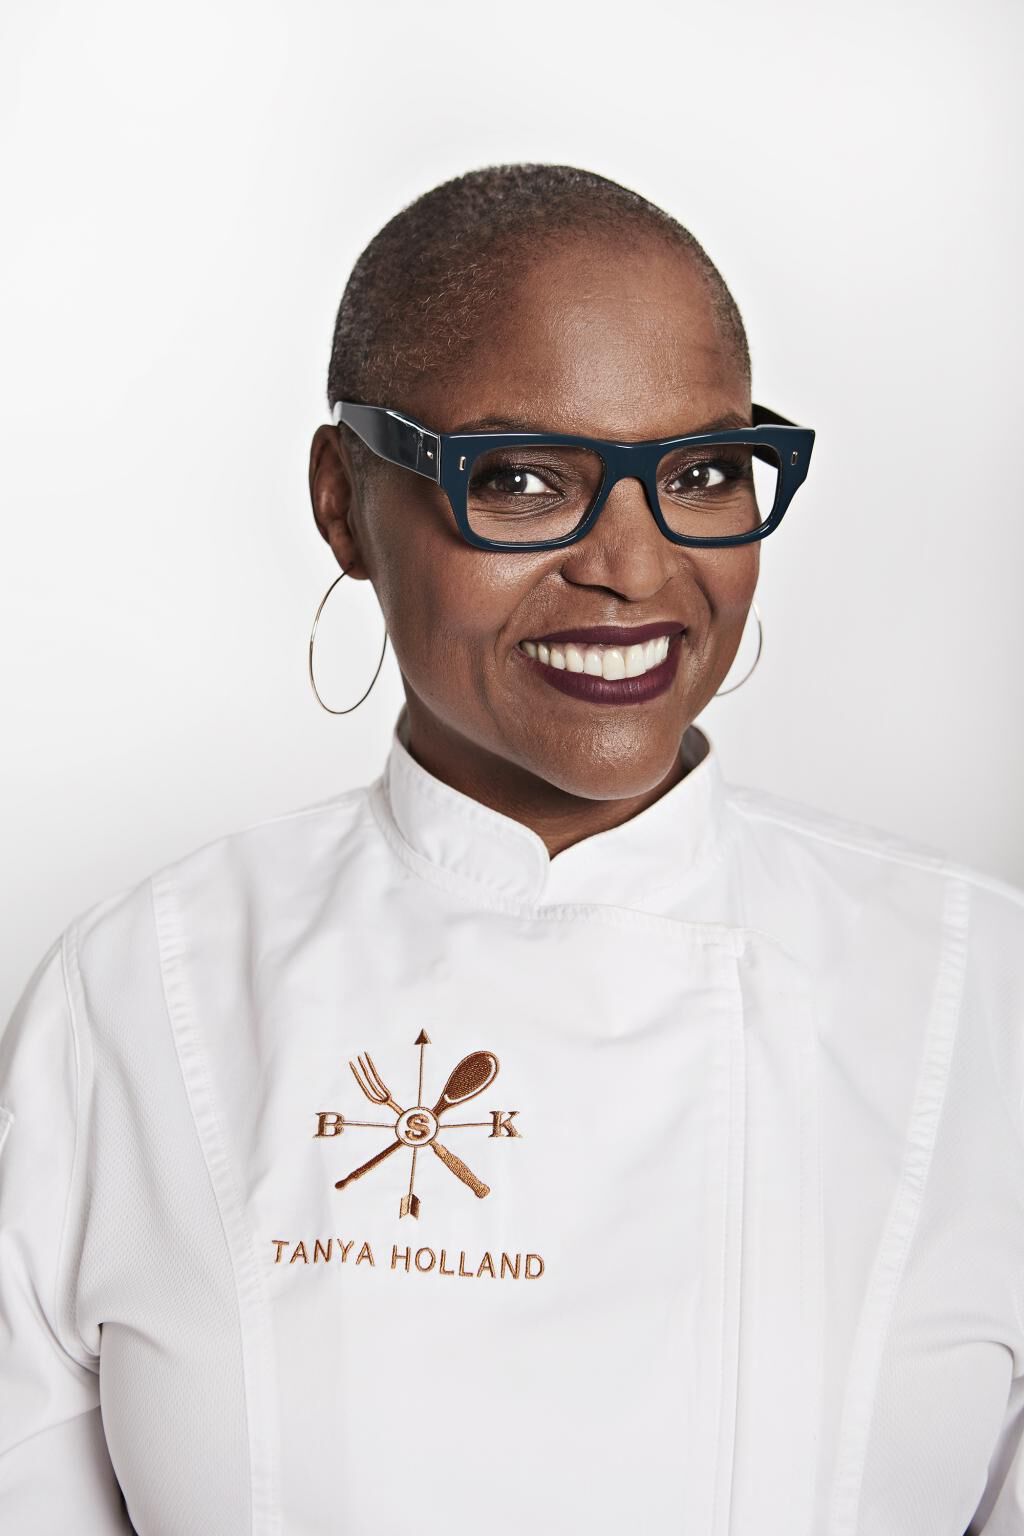 Chef Tanya Holland